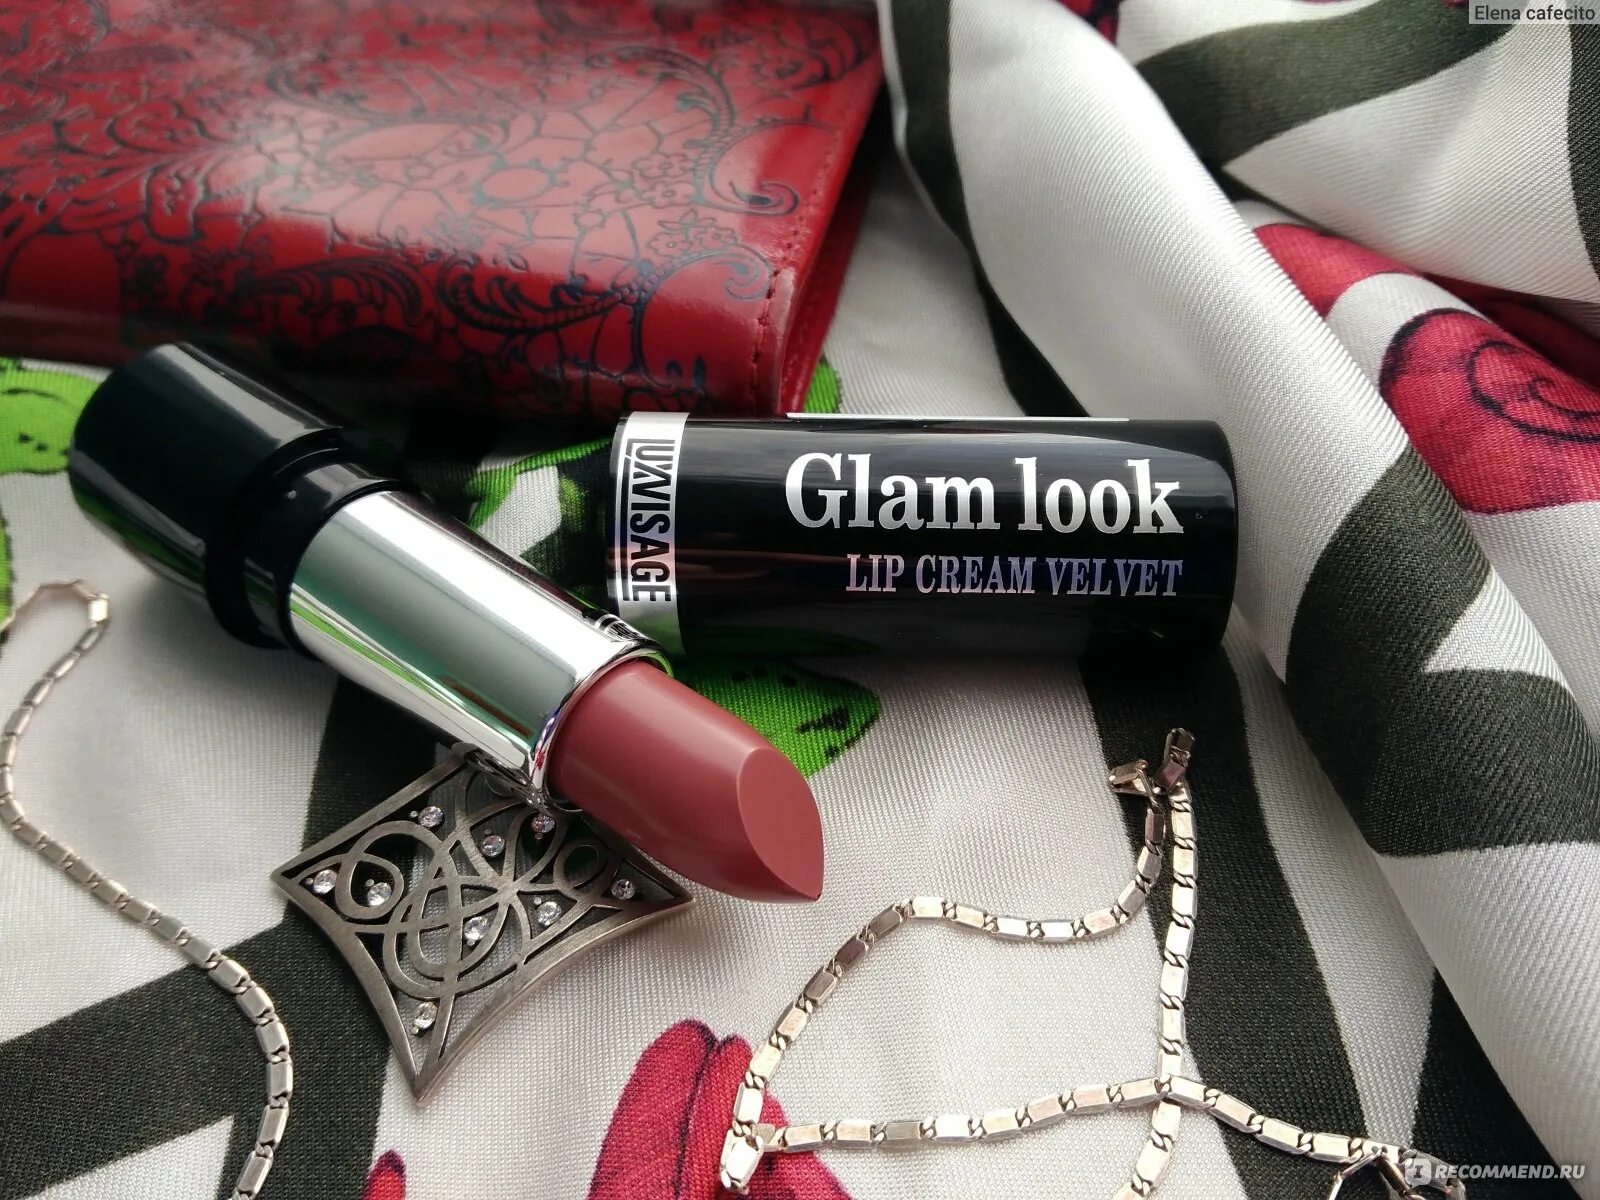 Губная помада "Glam look Cream Velvet" Люкс визаж. LUXVISAGE помада Glam look. Lux visage\губная помада "Glam look". LUXVISAGE губная помада "Glam look Cream Velvet" тон 322 (Арбузный сорбет). Luxvisage перламутровая